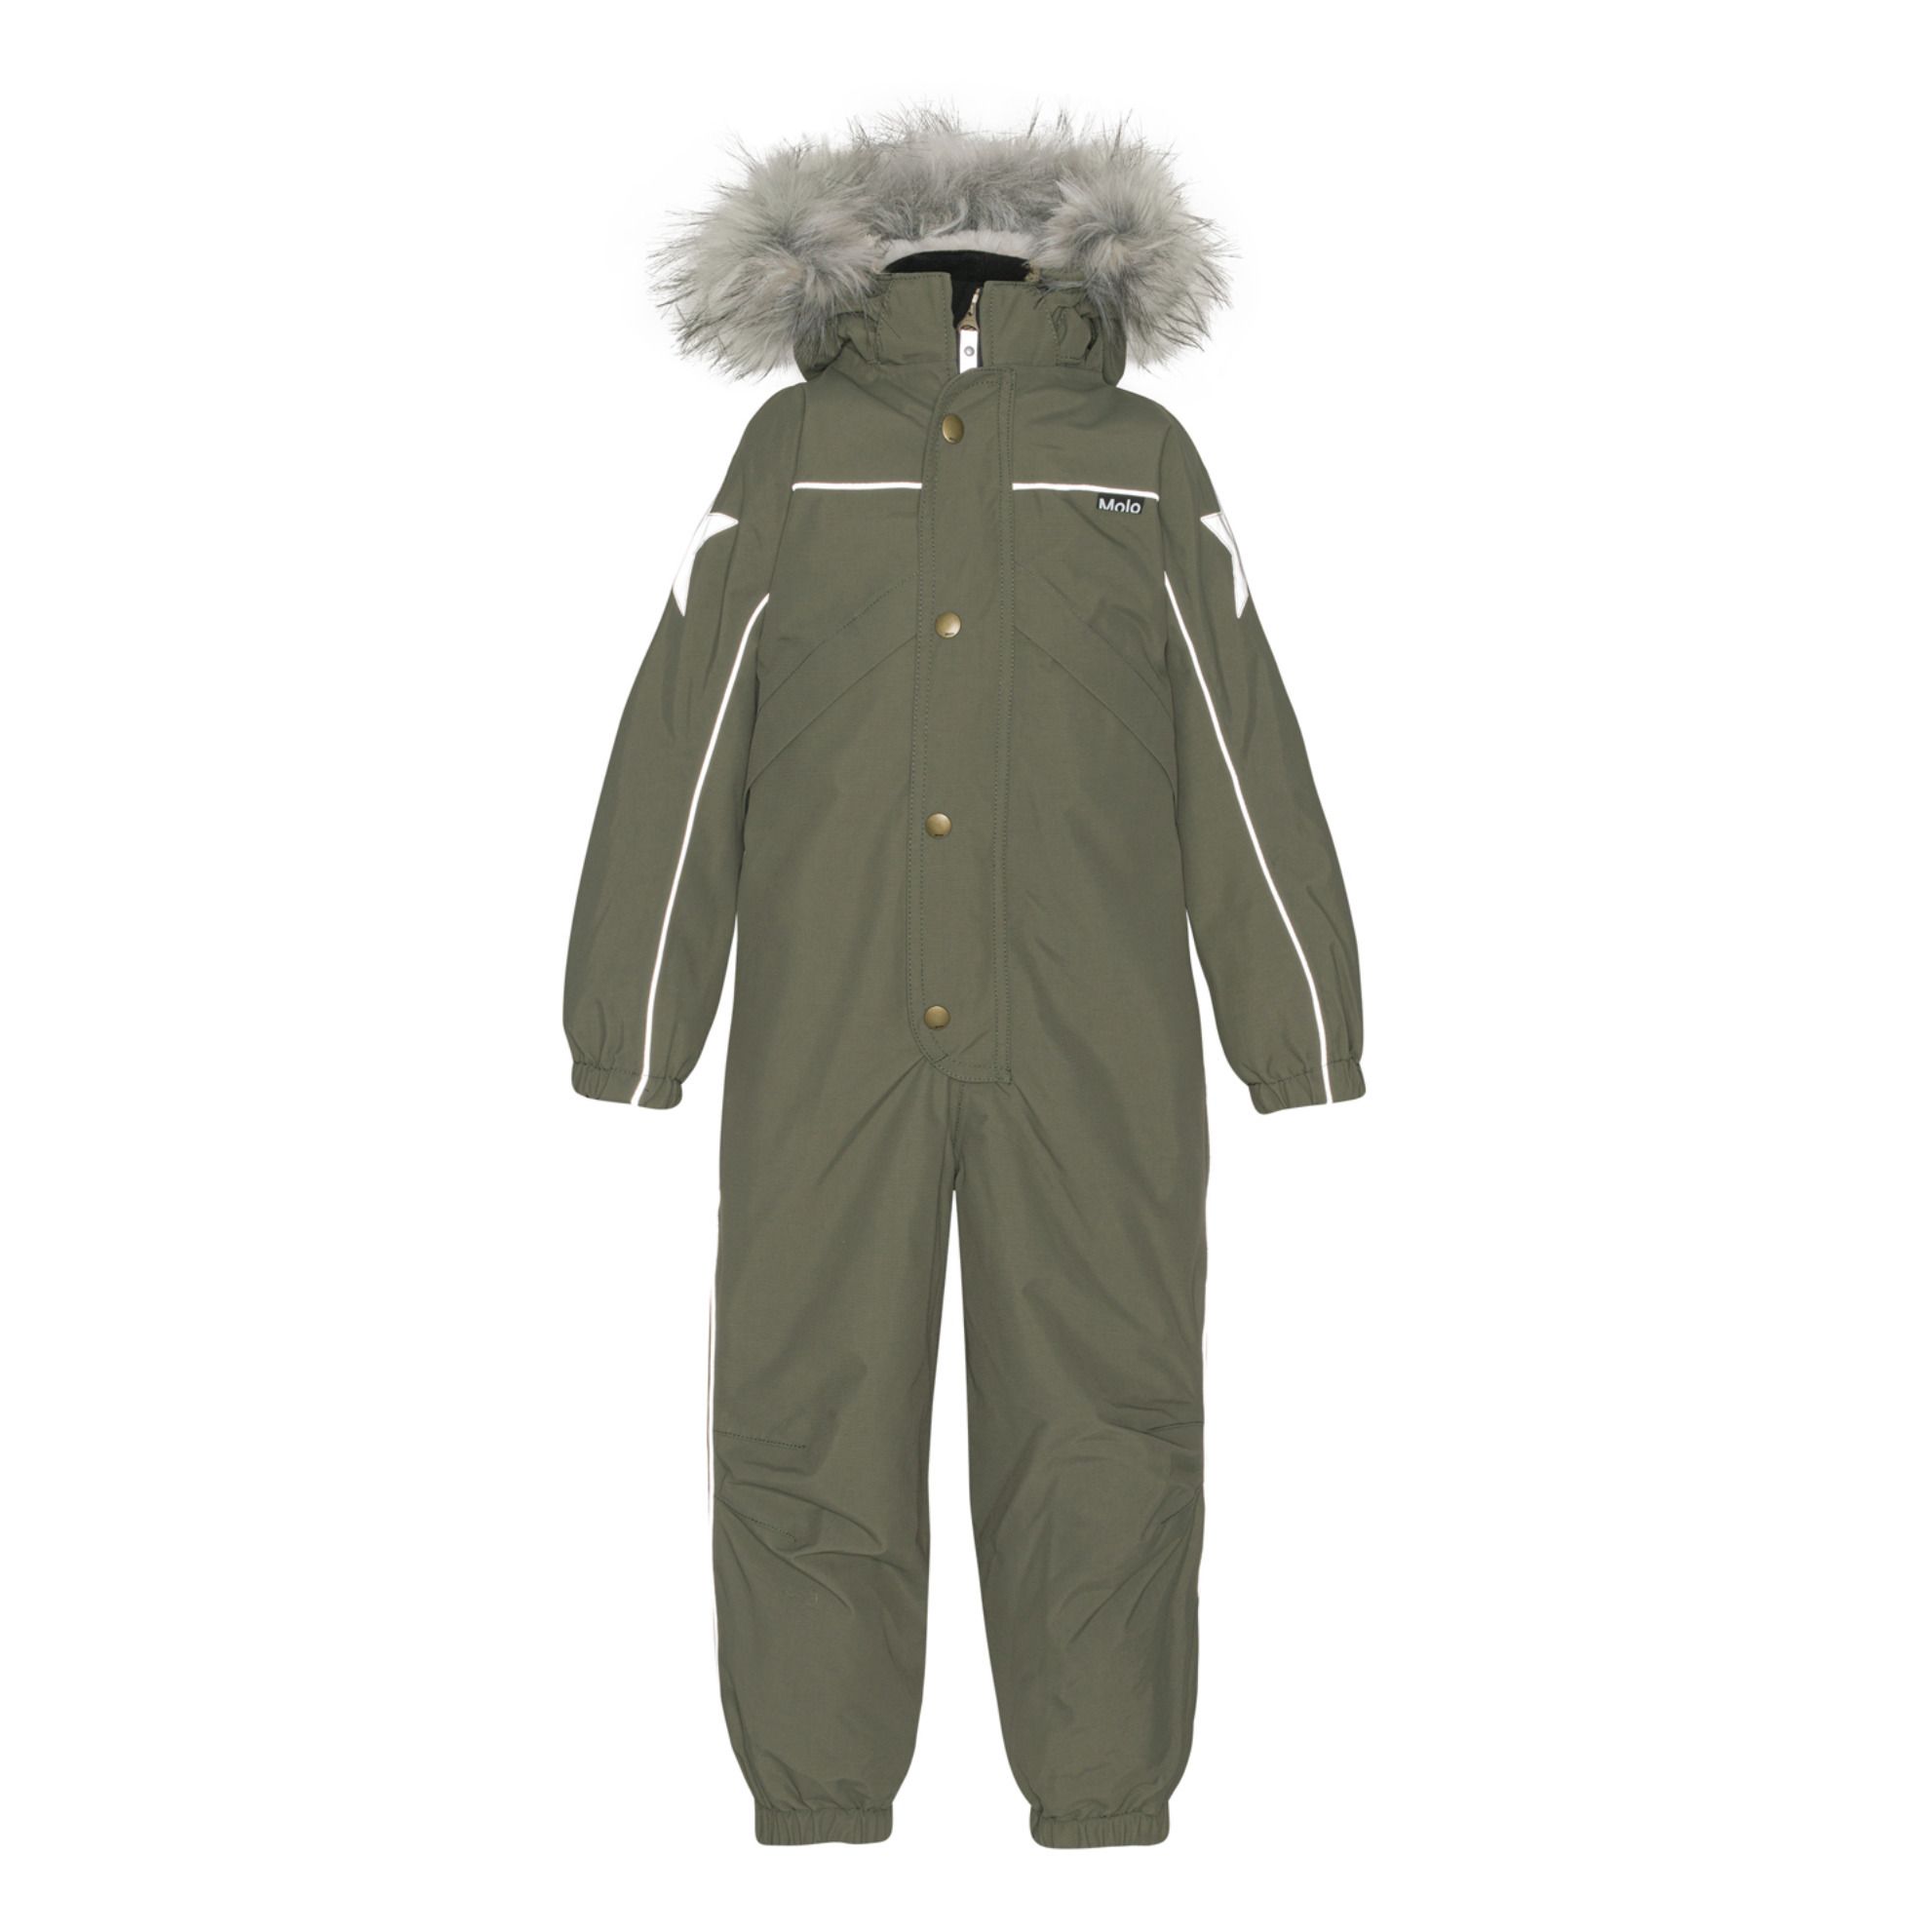 Molo - Polaris Fur Recycled Material Ski Suit - Khaki | Smallable